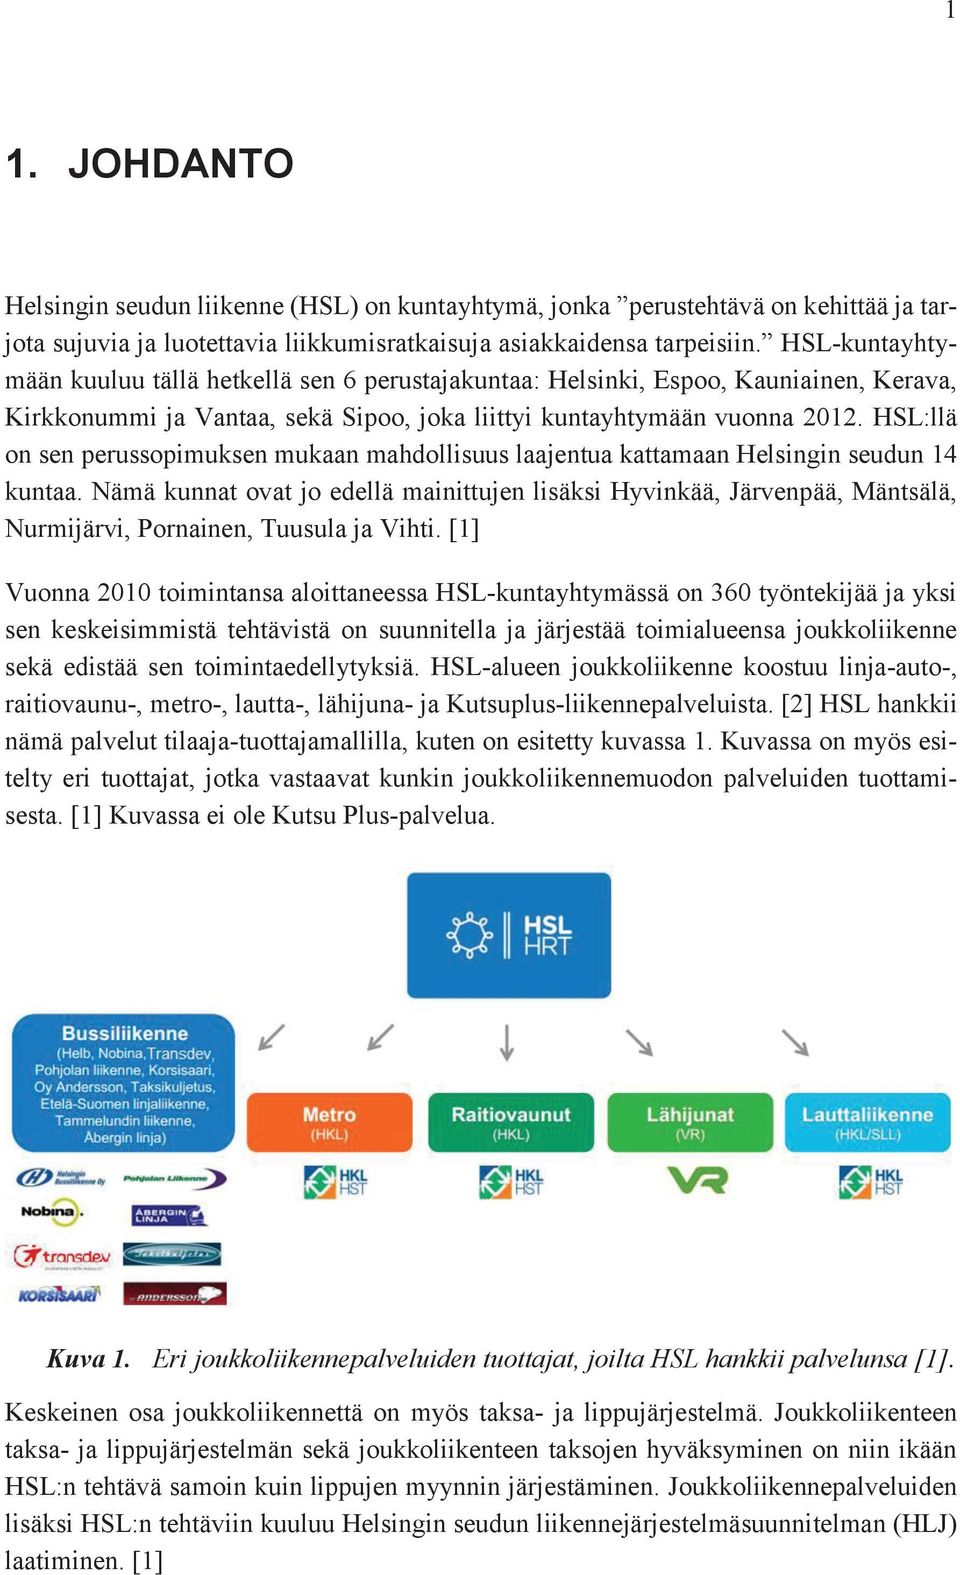 HSL:llä on sen perussopimuksen mukaan mahdollisuus laajentua kattamaan Helsingin seudun 14 kuntaa.